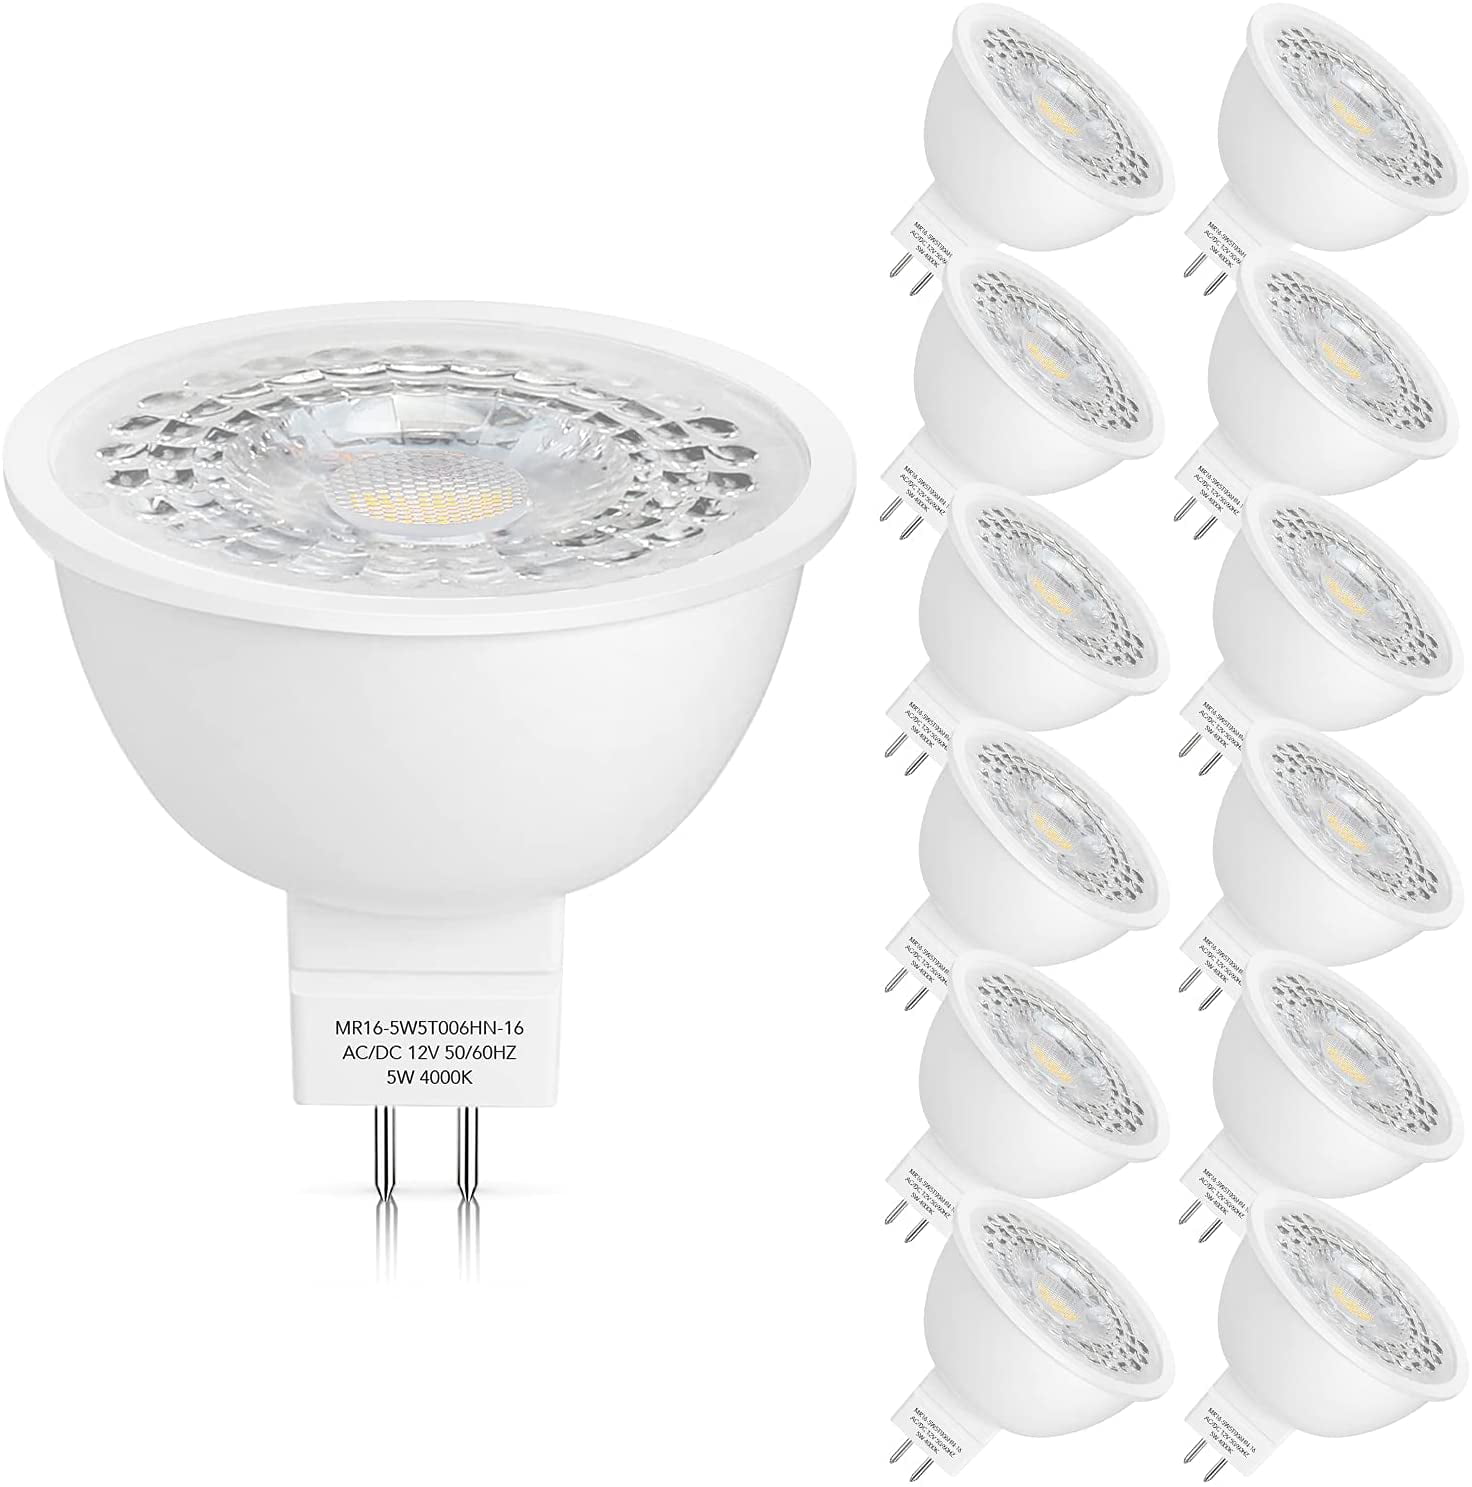 12 pcs GU10 LED Spotlight 5W LED Recessed Light Bulb Non-dimmable Pure White 